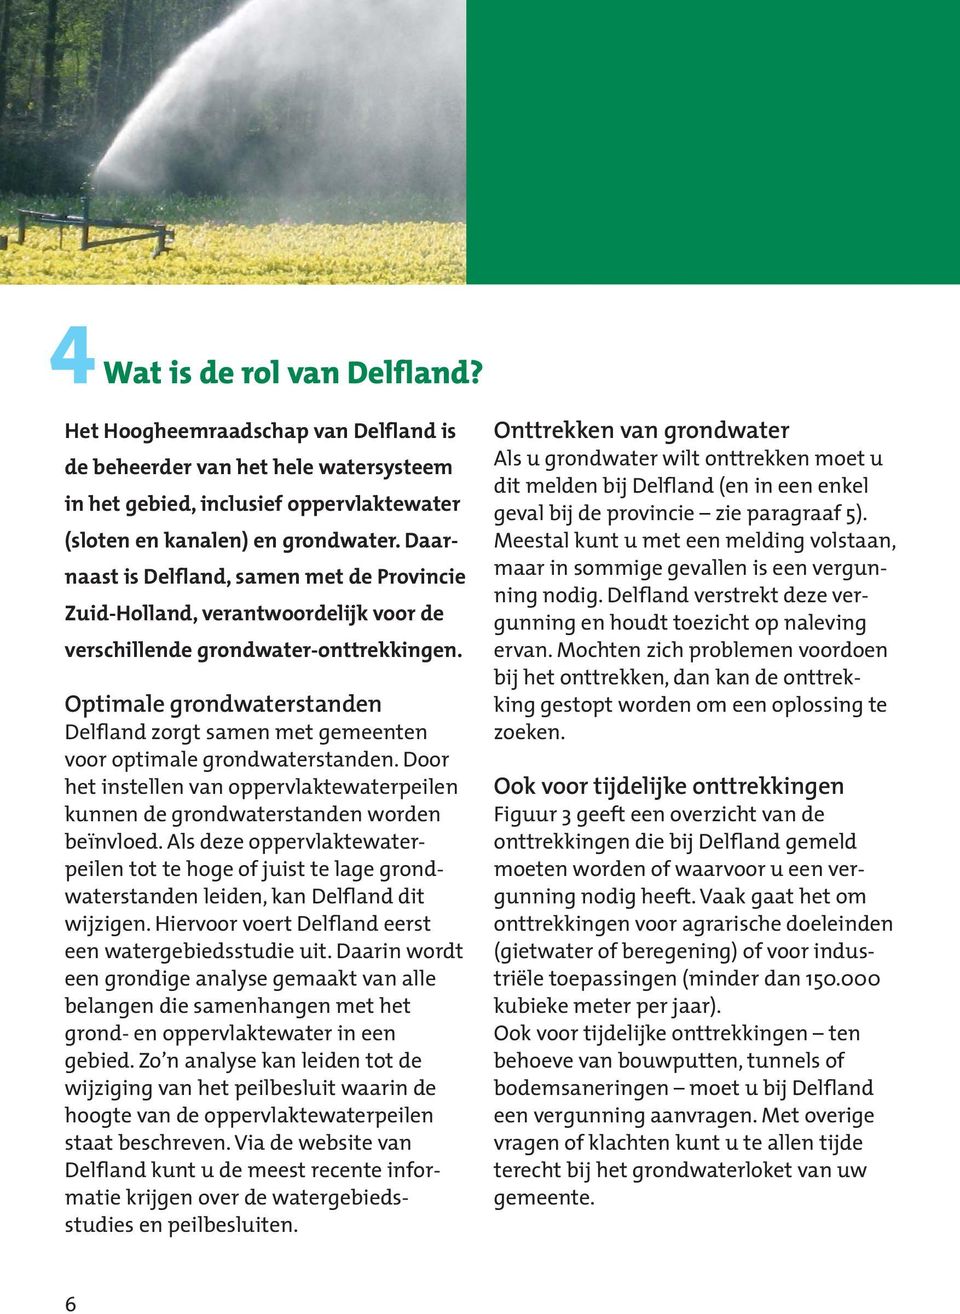 Optimale grondwaterstanden Delfland zorgt samen met gemeenten voor optimale grondwaterstanden. Door het instellen van oppervlaktewaterpeilen kunnen de grondwaterstanden worden beïnvloed.